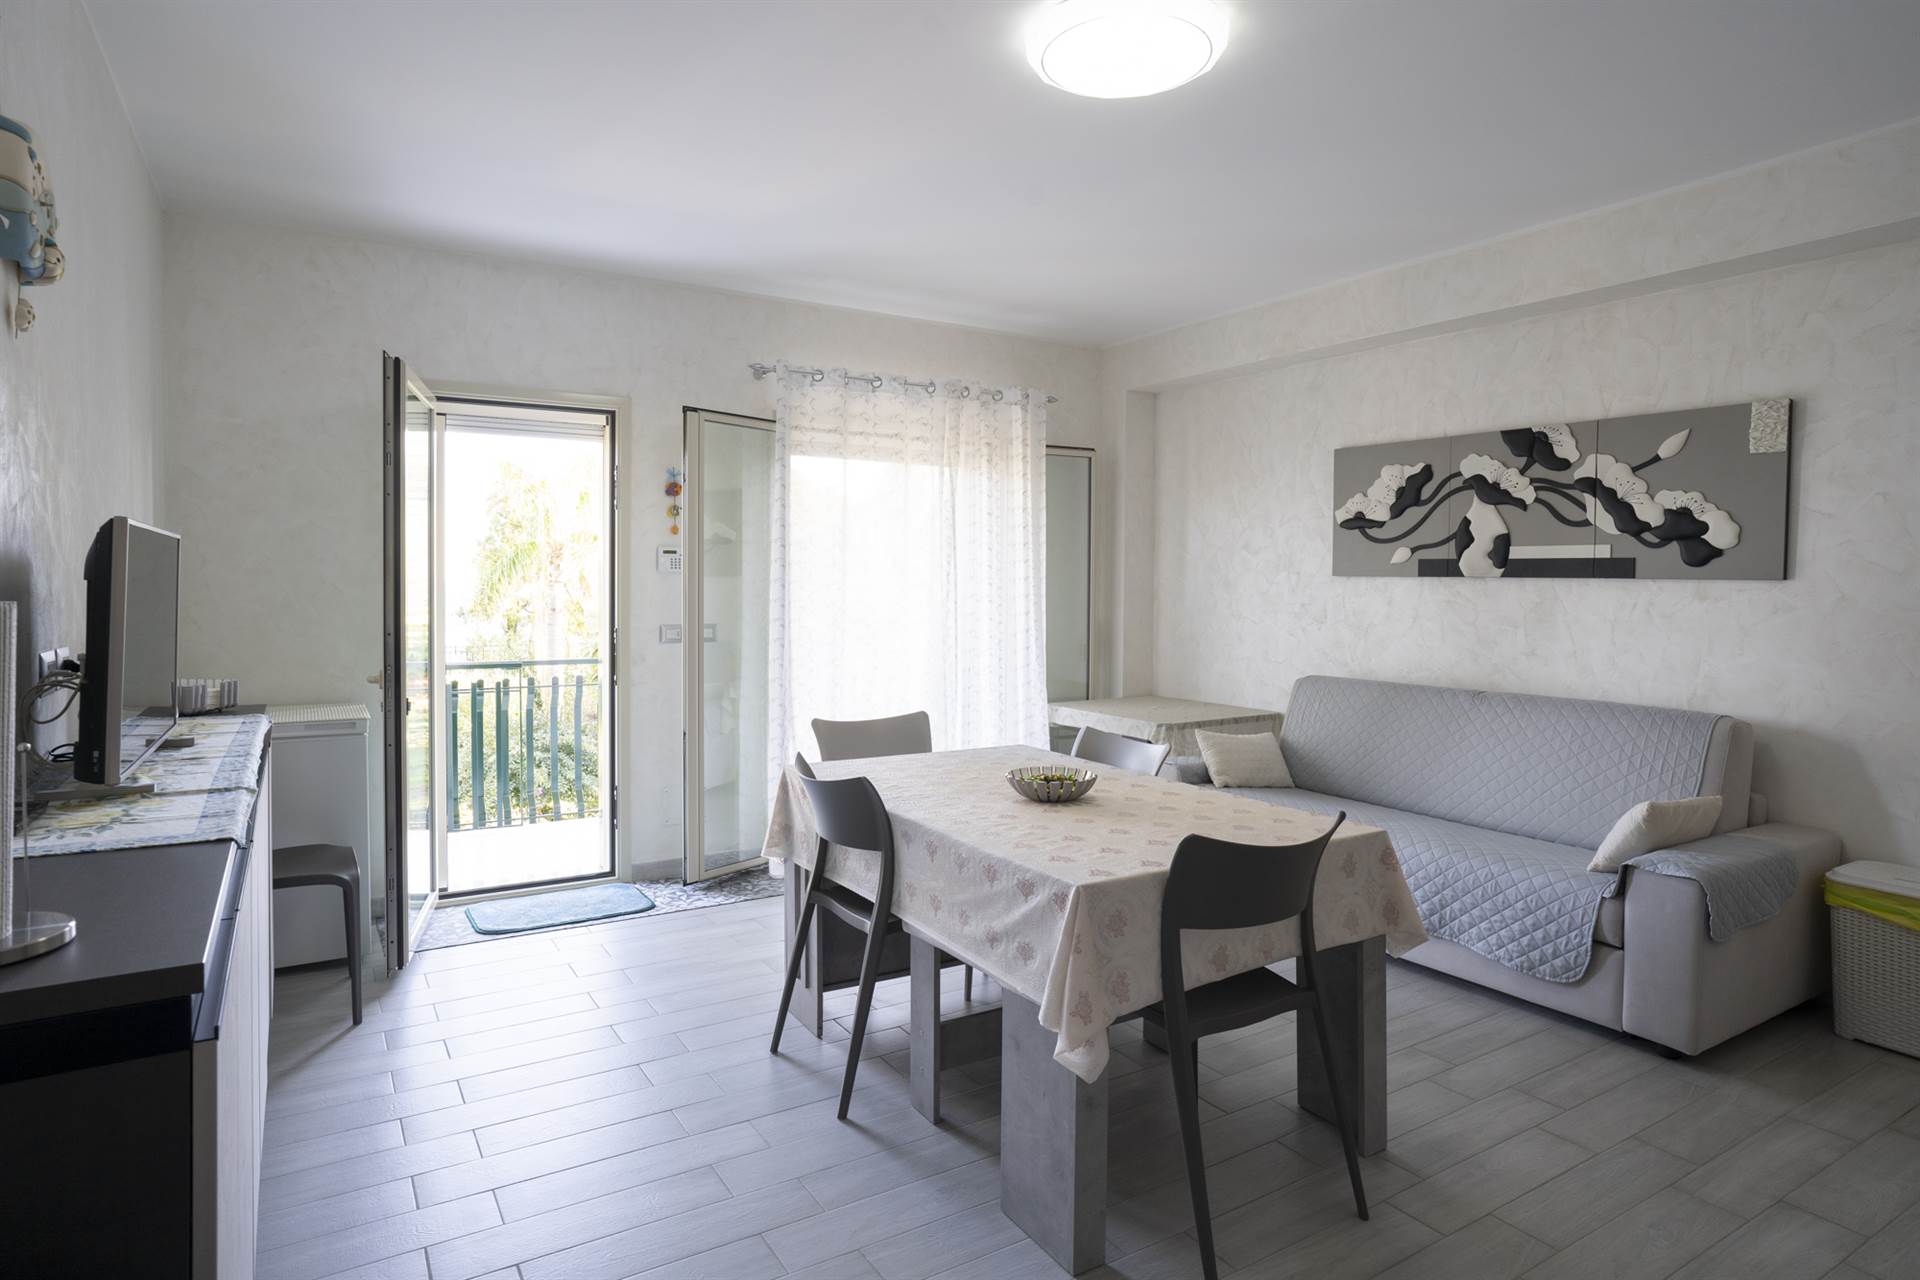 Si propone in vendita nel comune di Mascali, più precisamente in via Spiaggia n° 149, appartamento totalmente ristrutturato (FRONTE MARE) posto al 